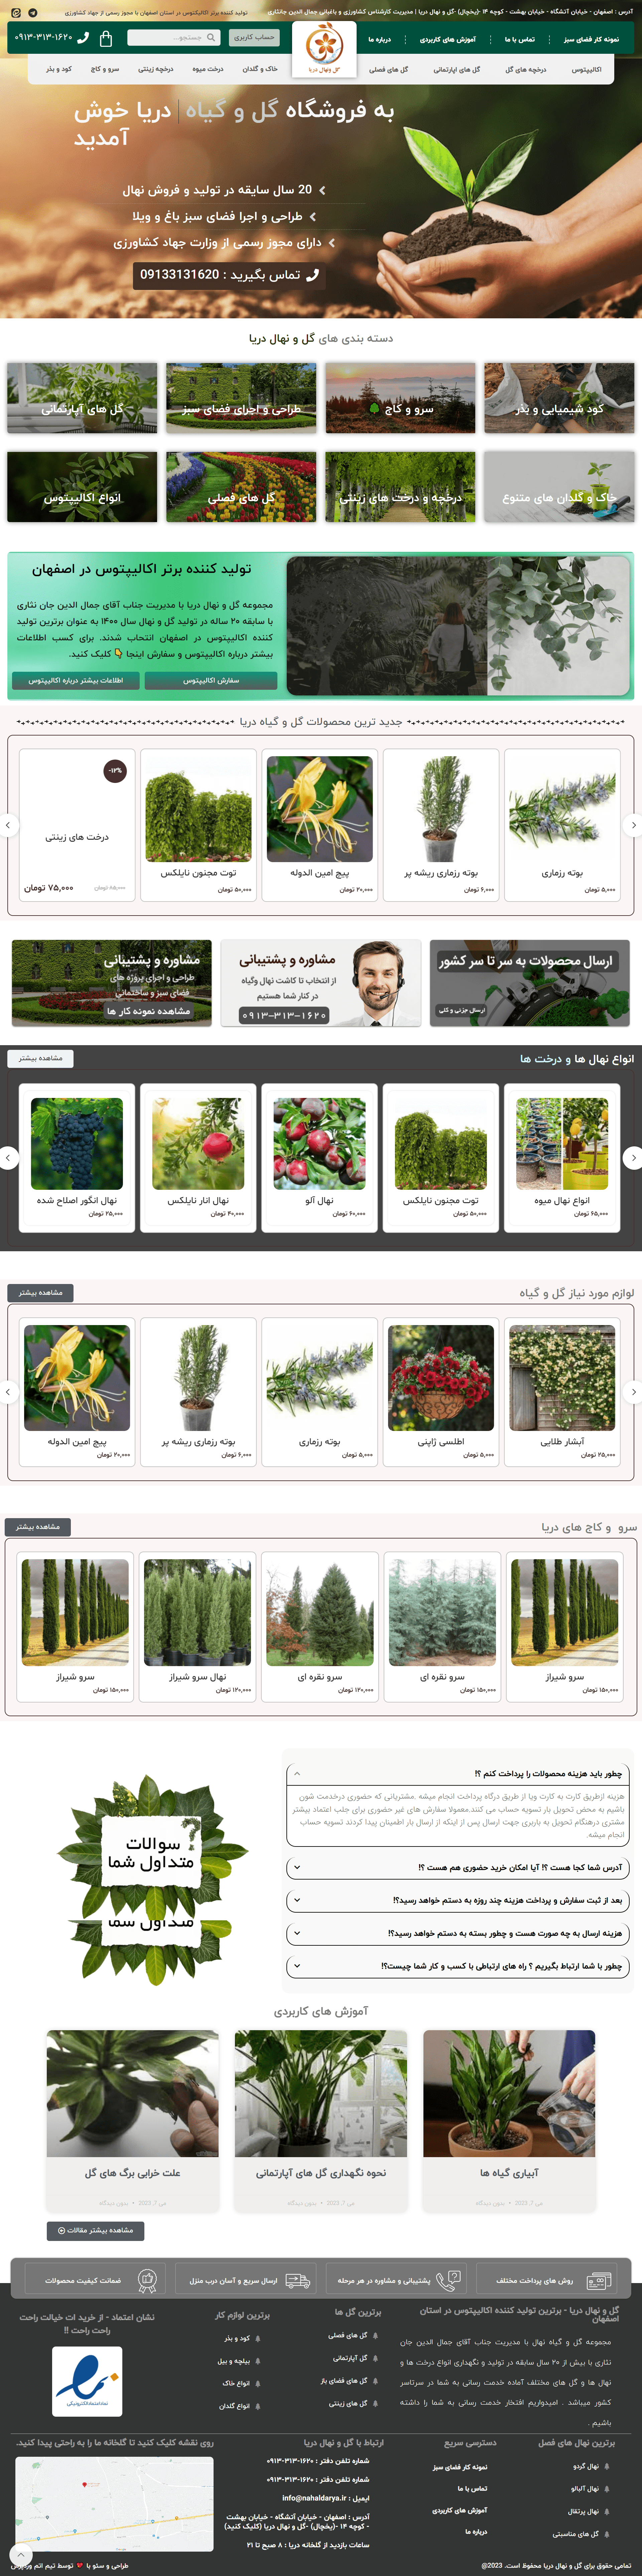 طراحی سایت فروشگاهی گل و گیاه نهال